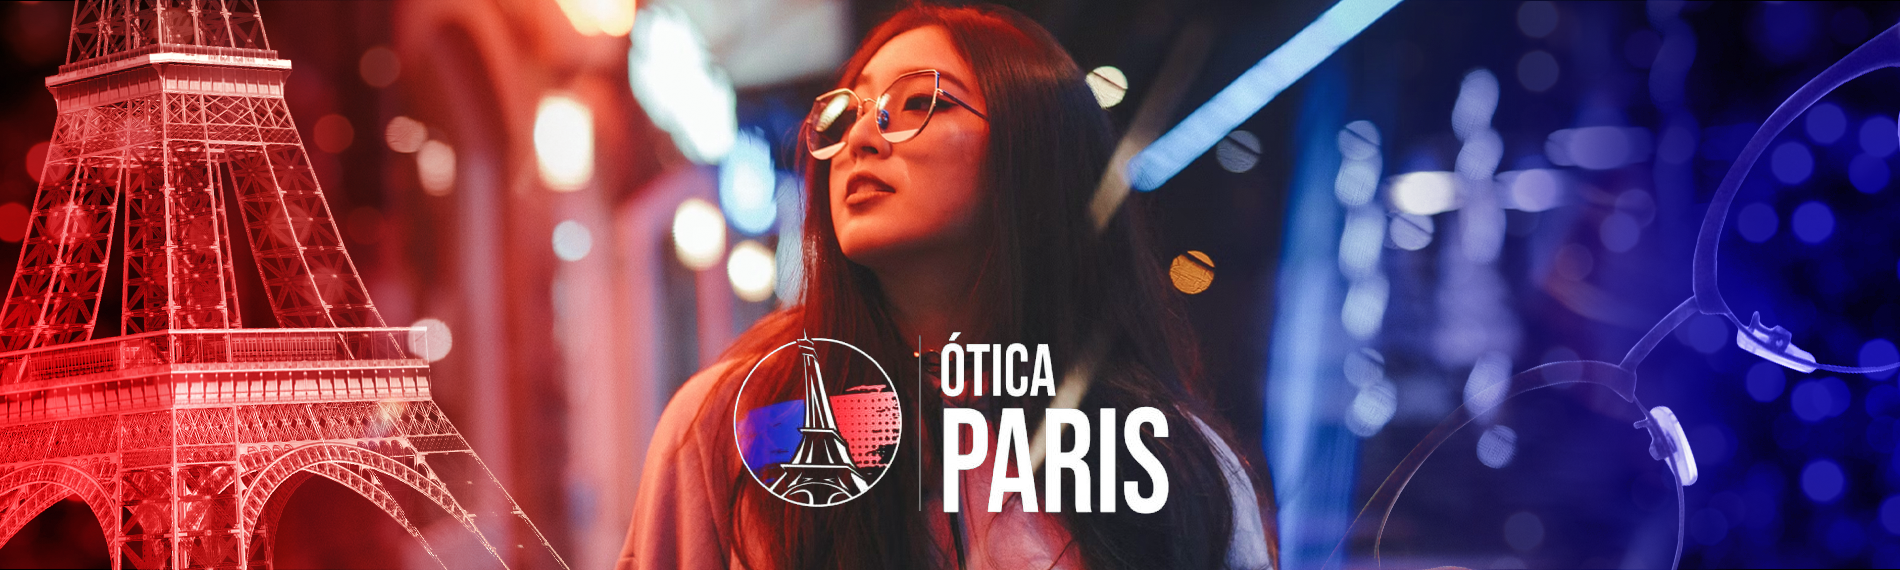 Ótica Paris Cidade Alta